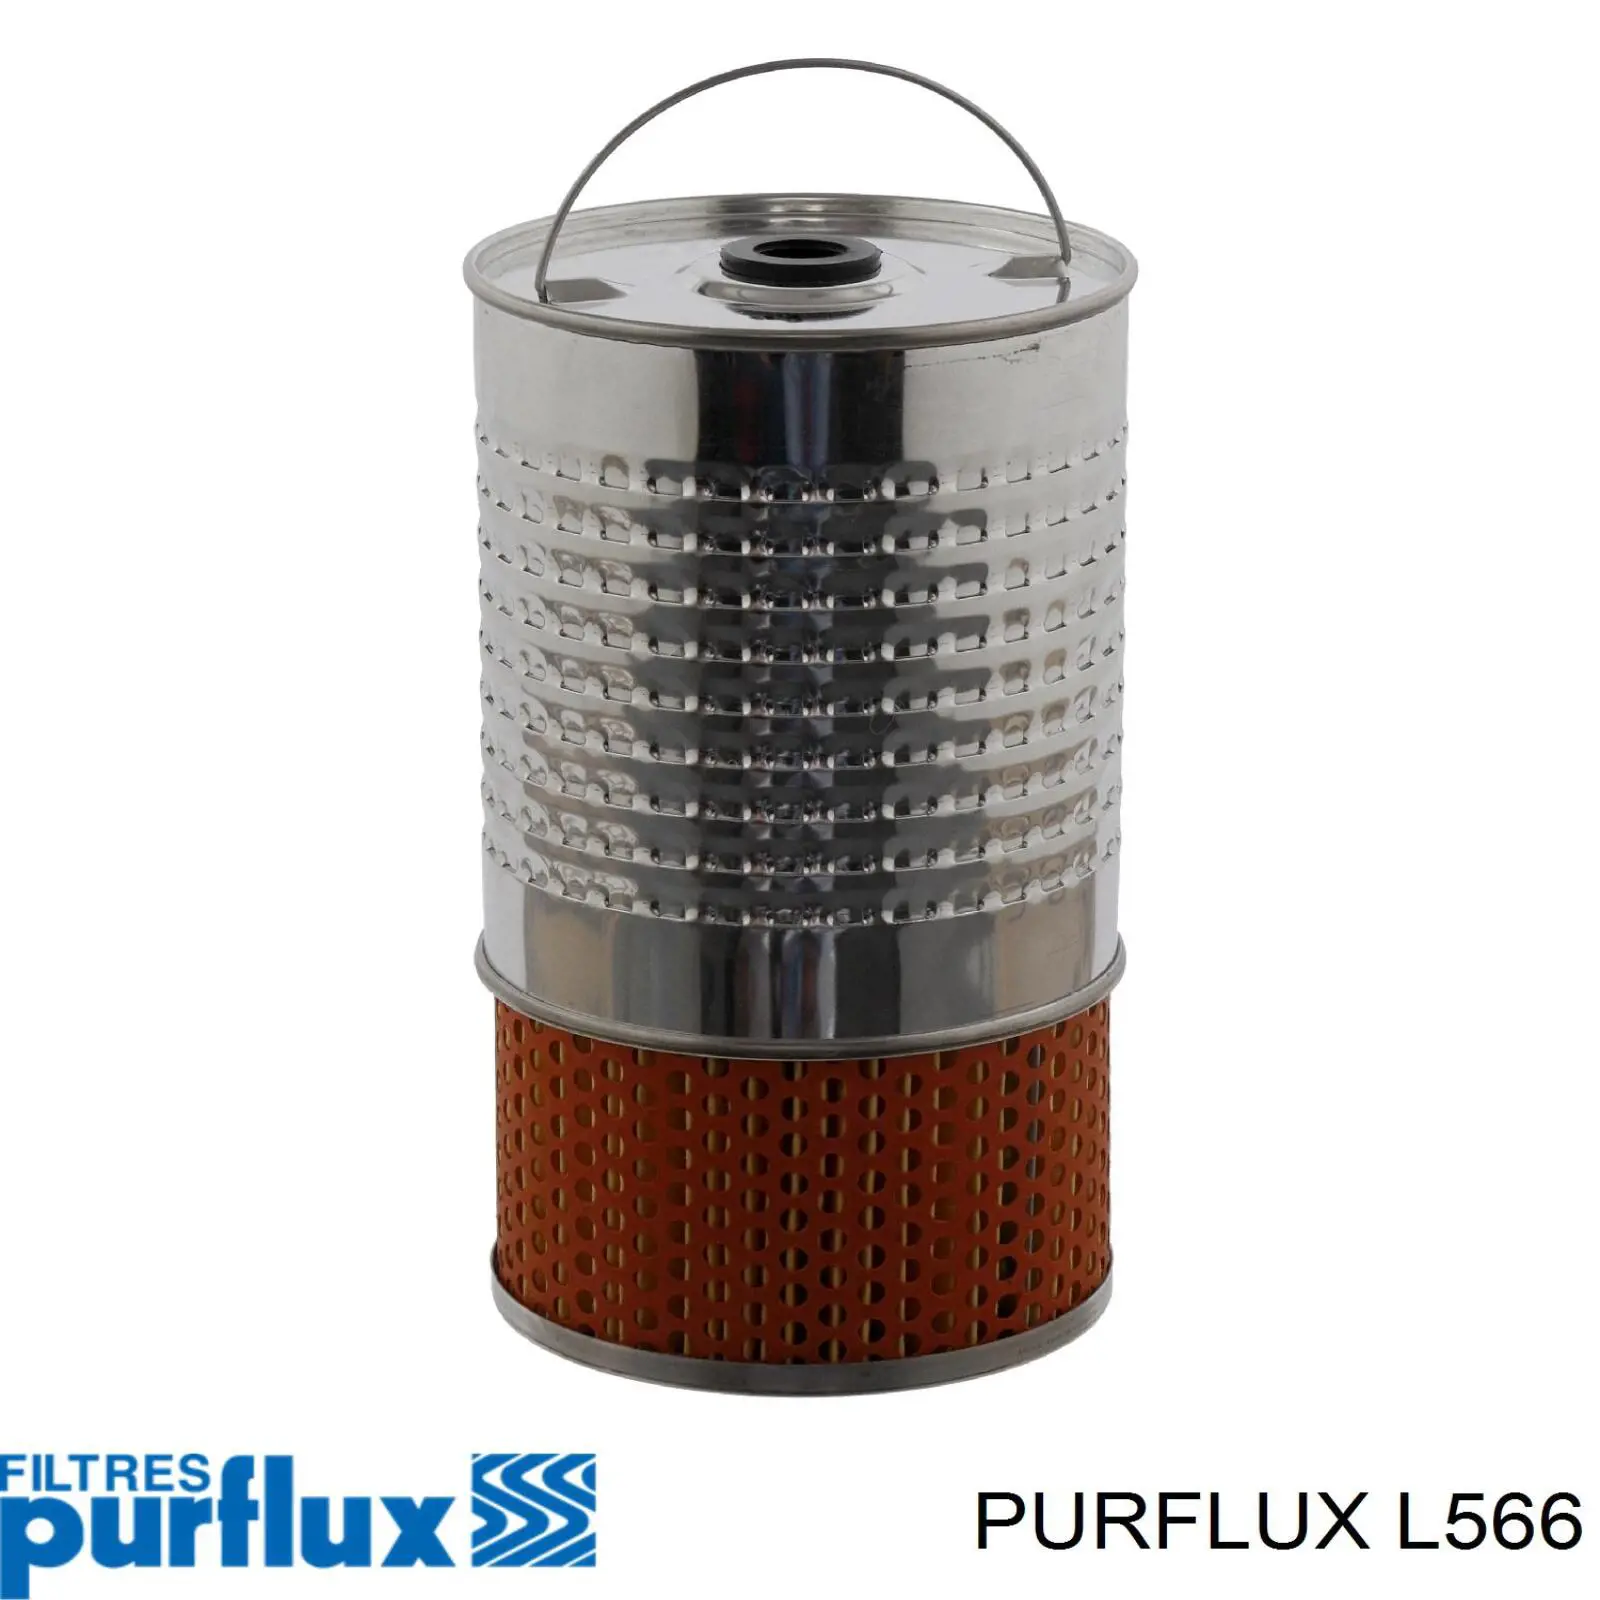 L566 Purflux filtro de aceite